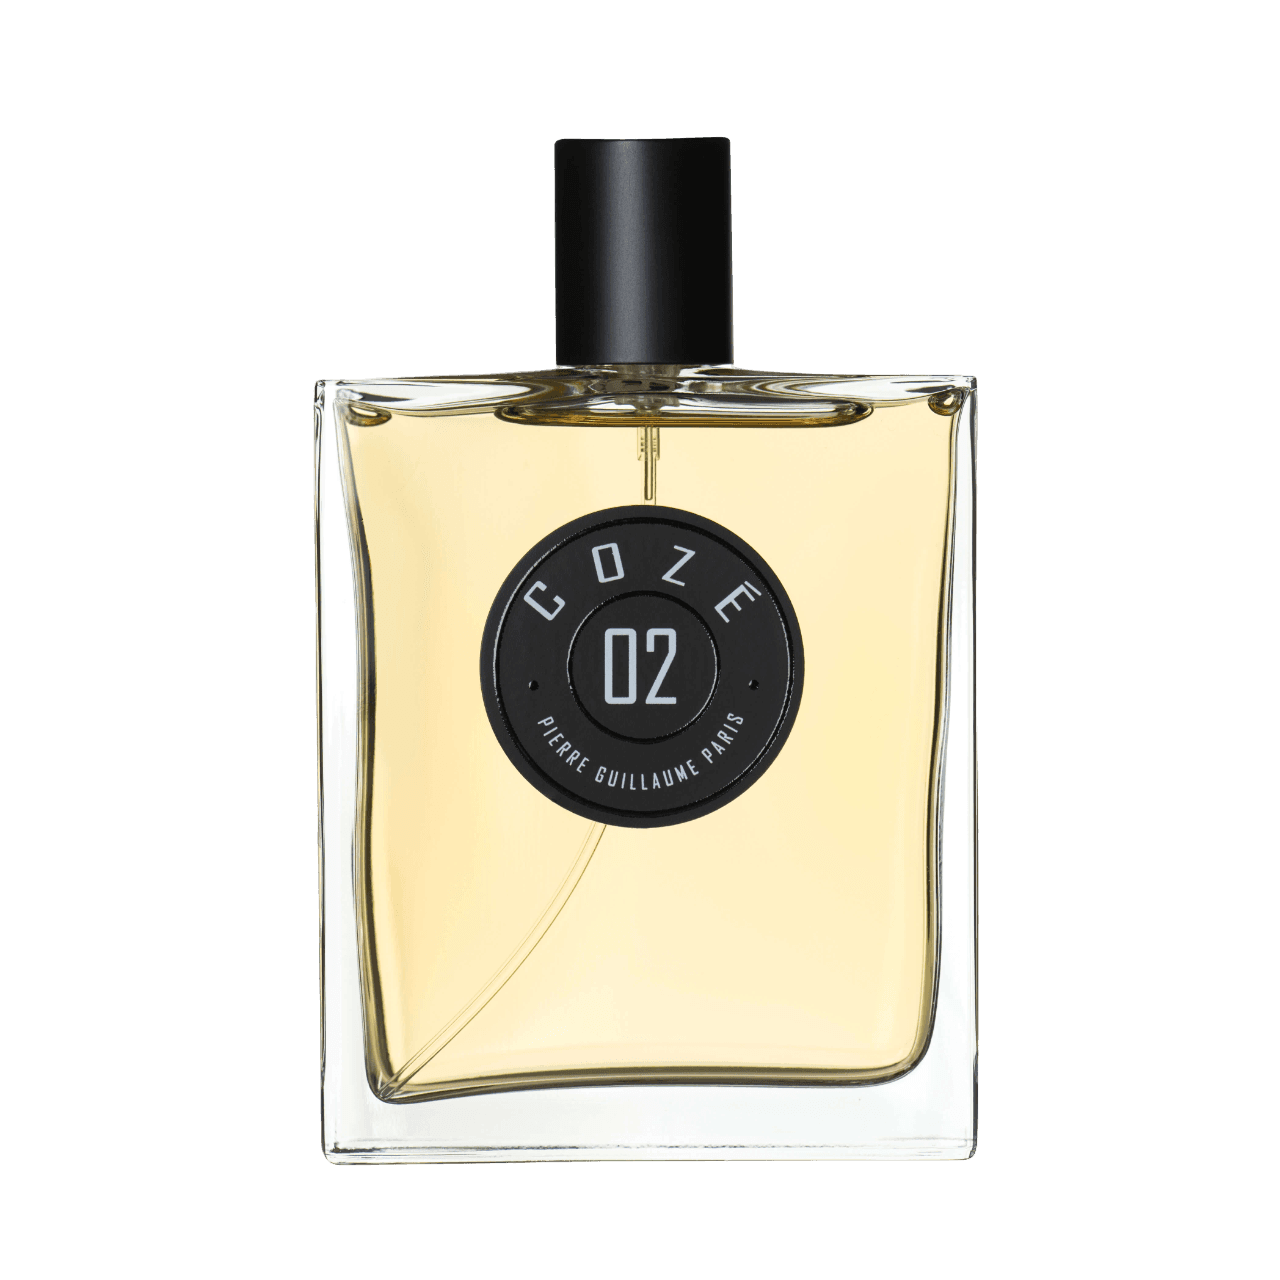 Pierre Guillaume Paris - 02Coze 100 ml | Perfume Lounge